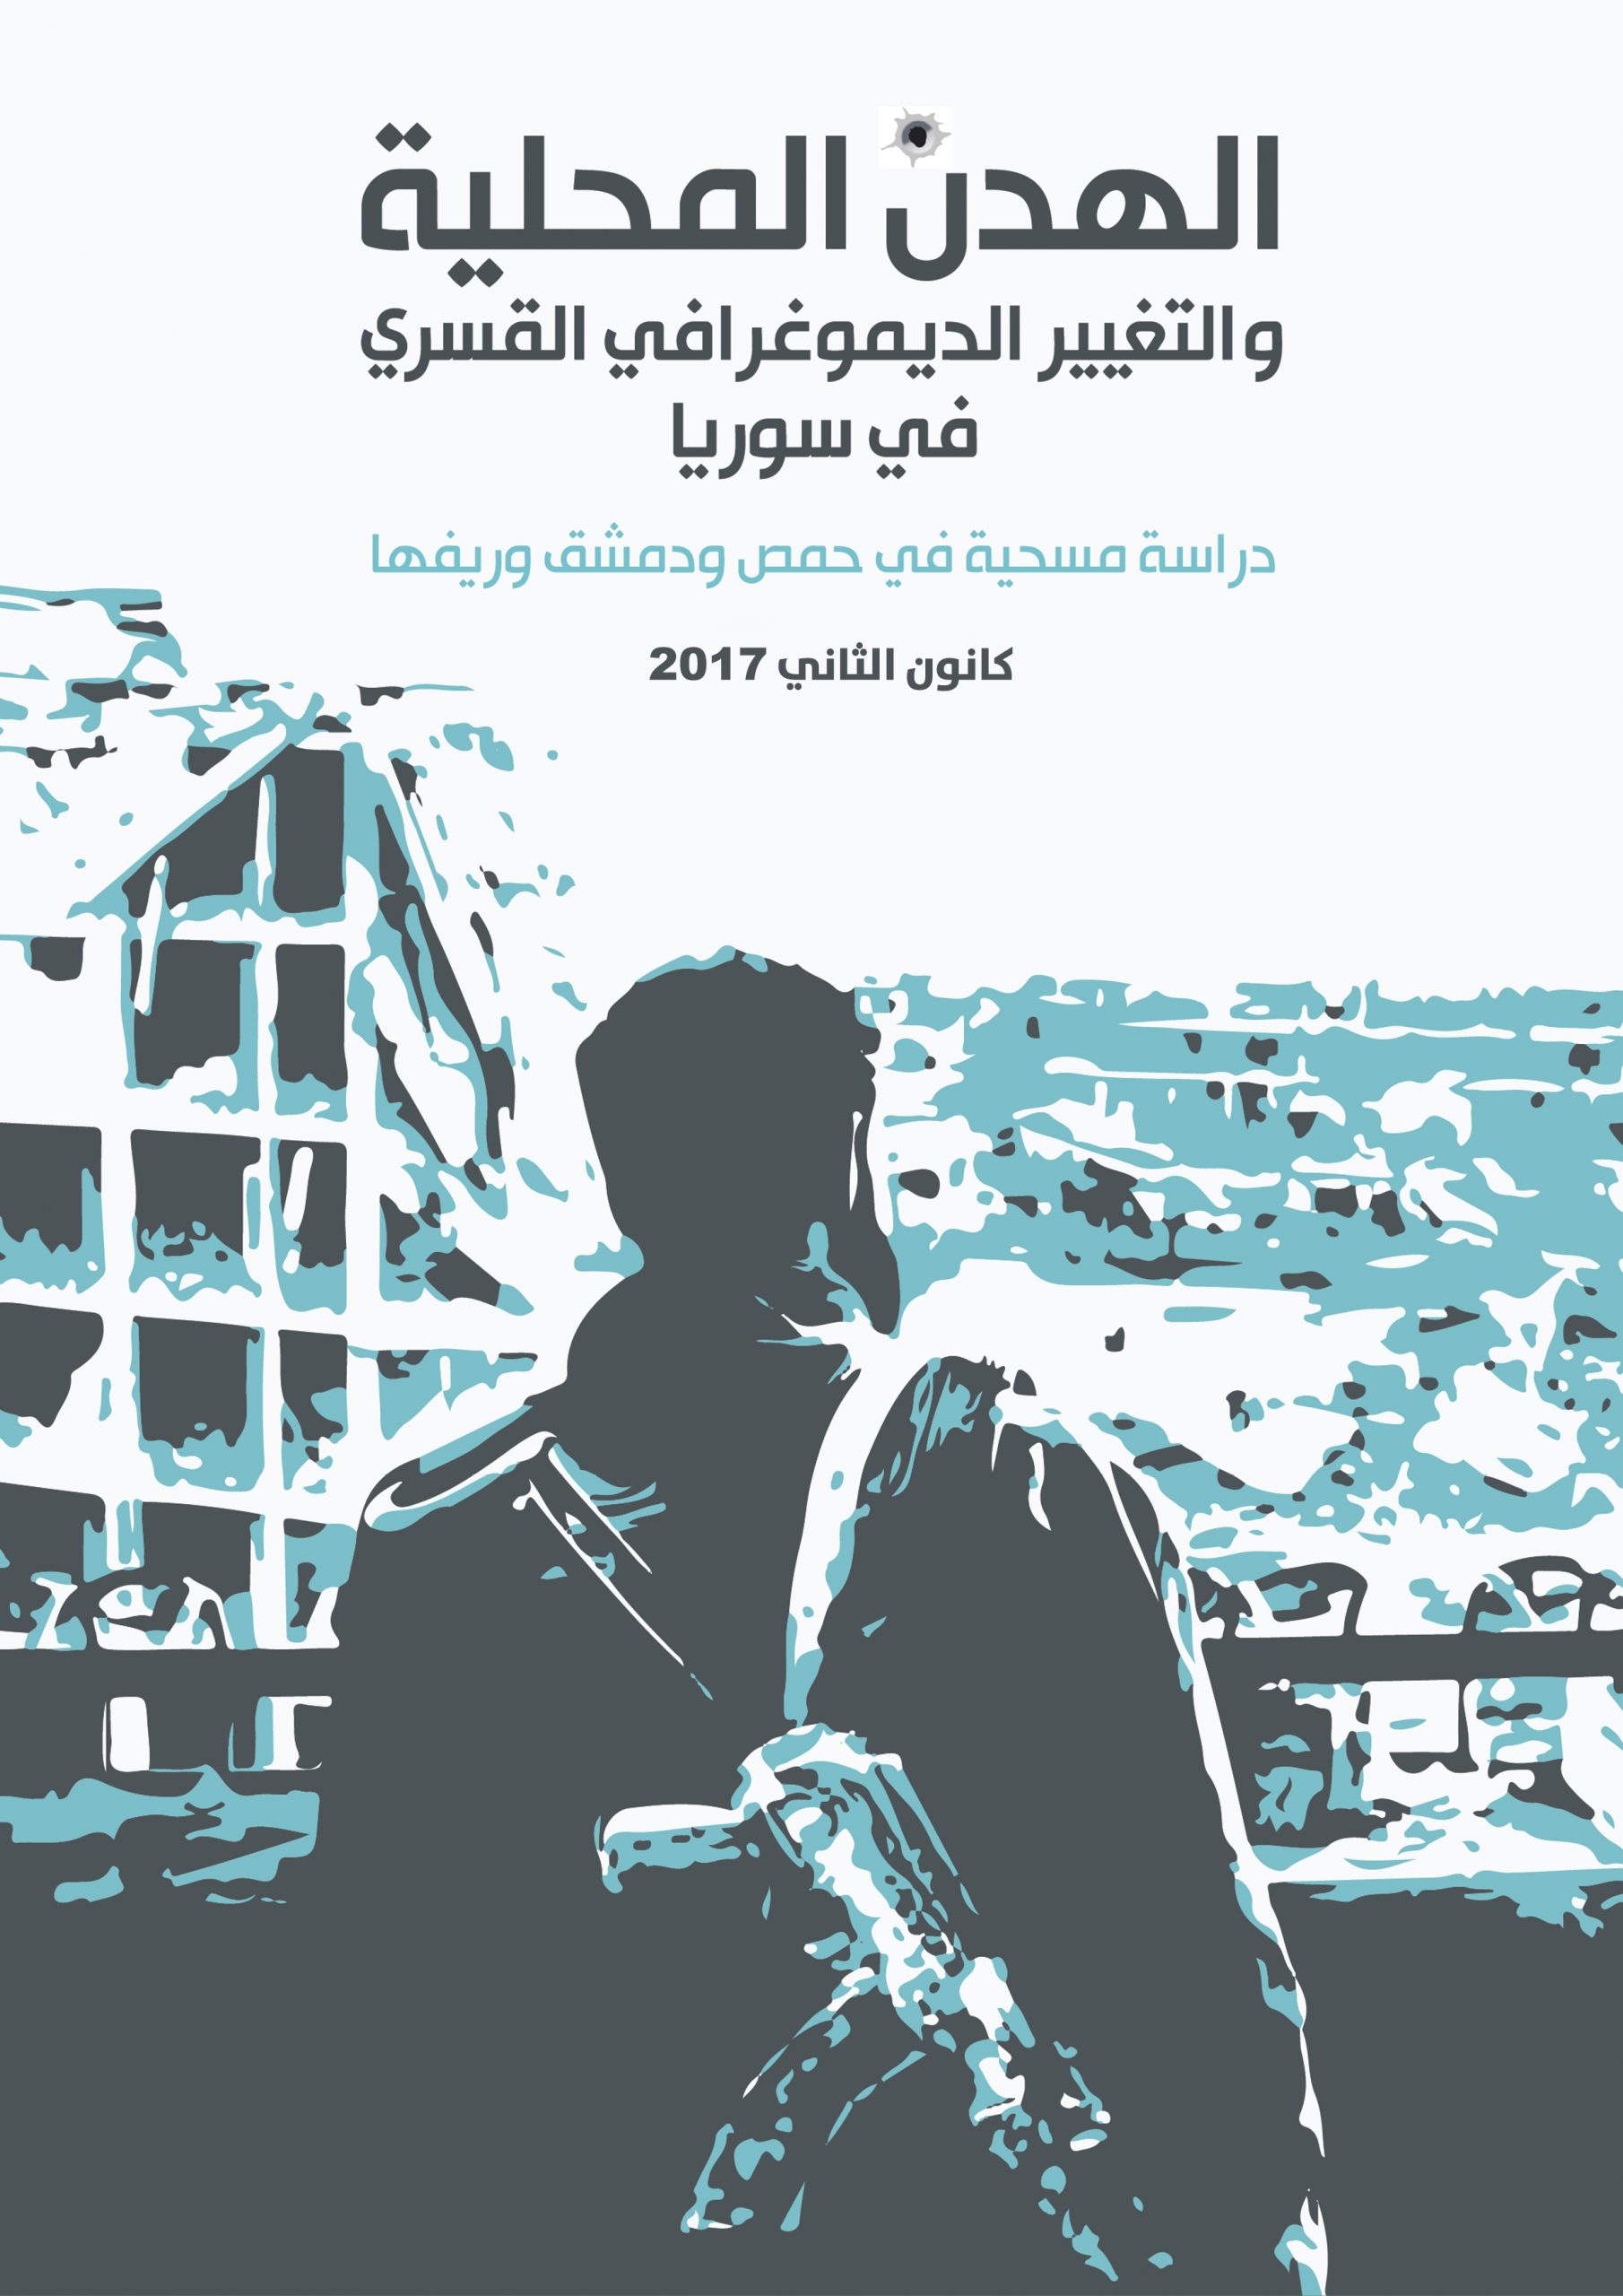 الهدن المحلية والتغيير الديمغرافي القسري في سوريا